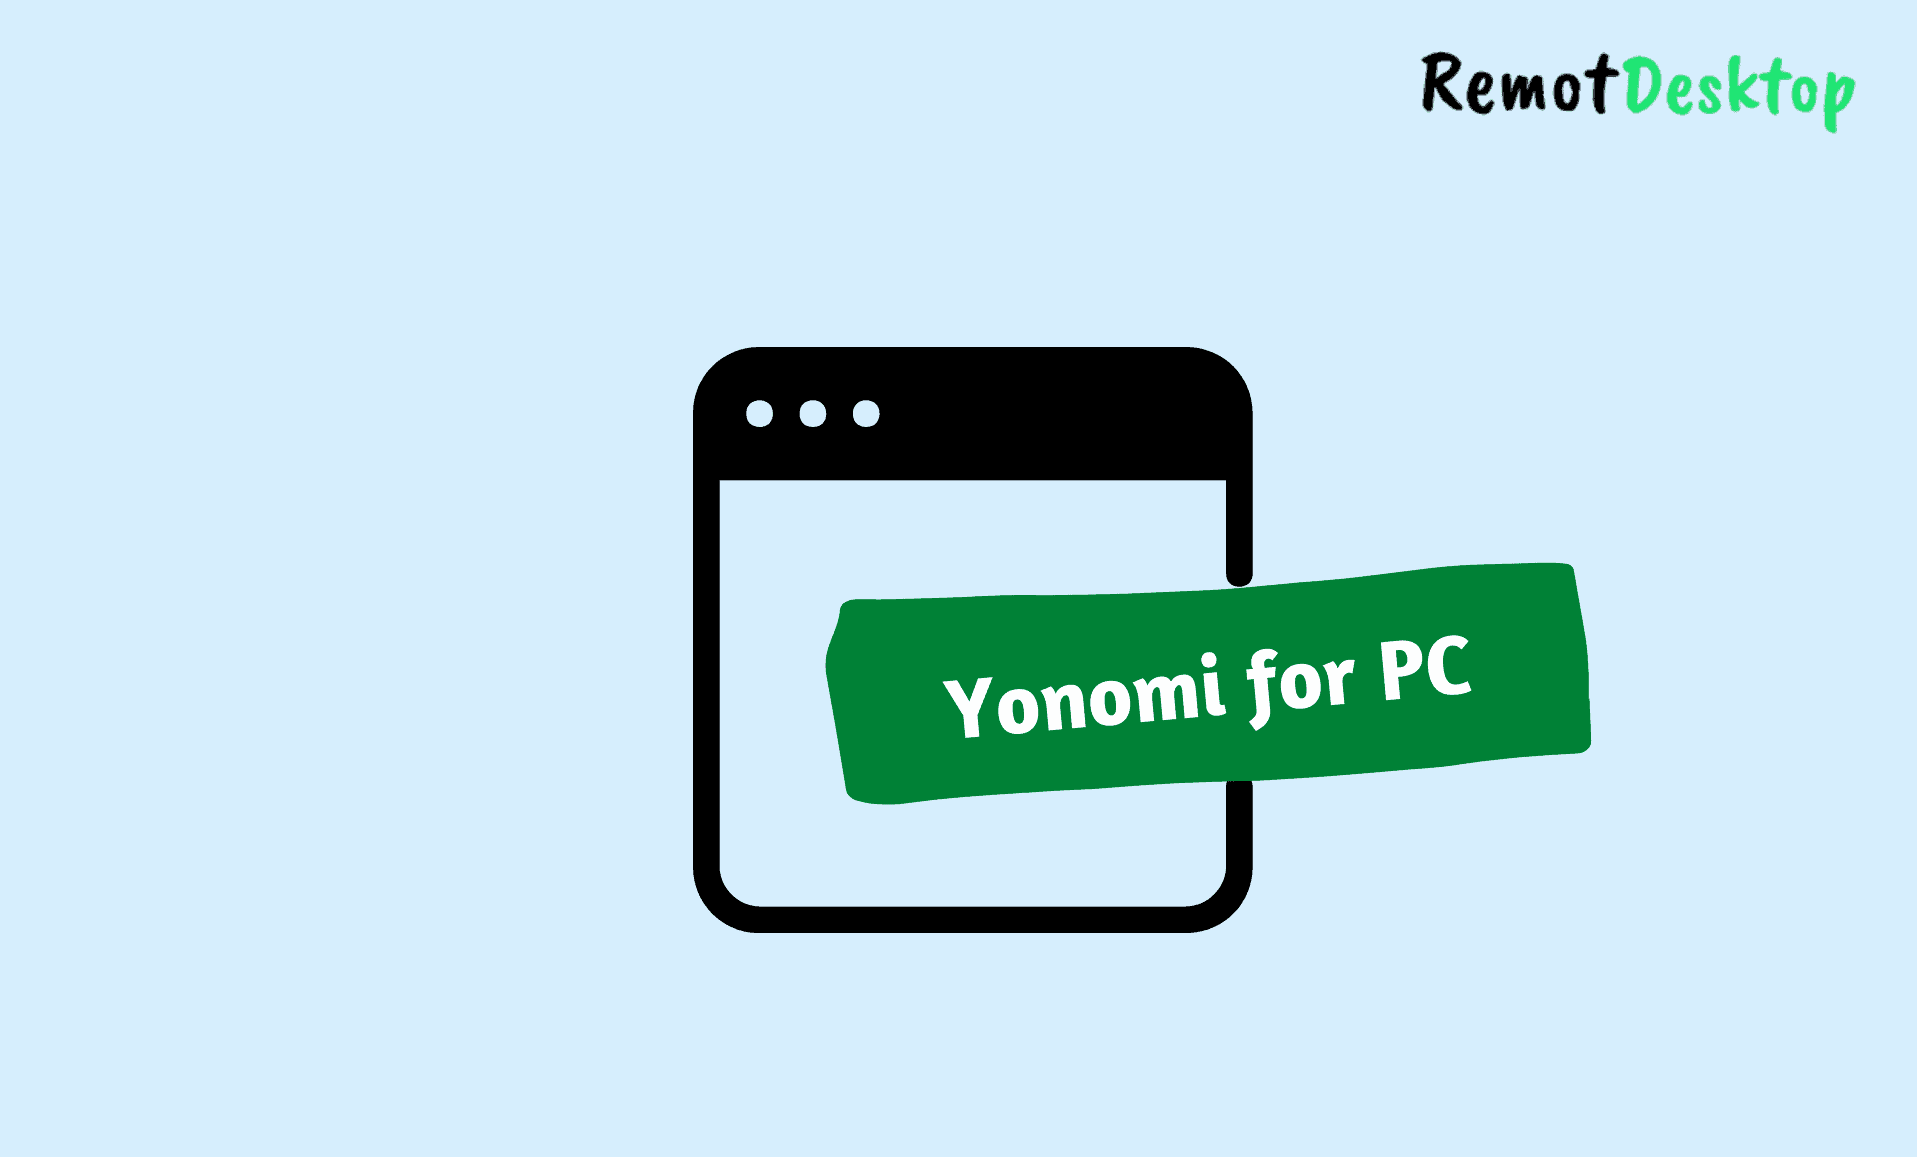 Yonomi for PC